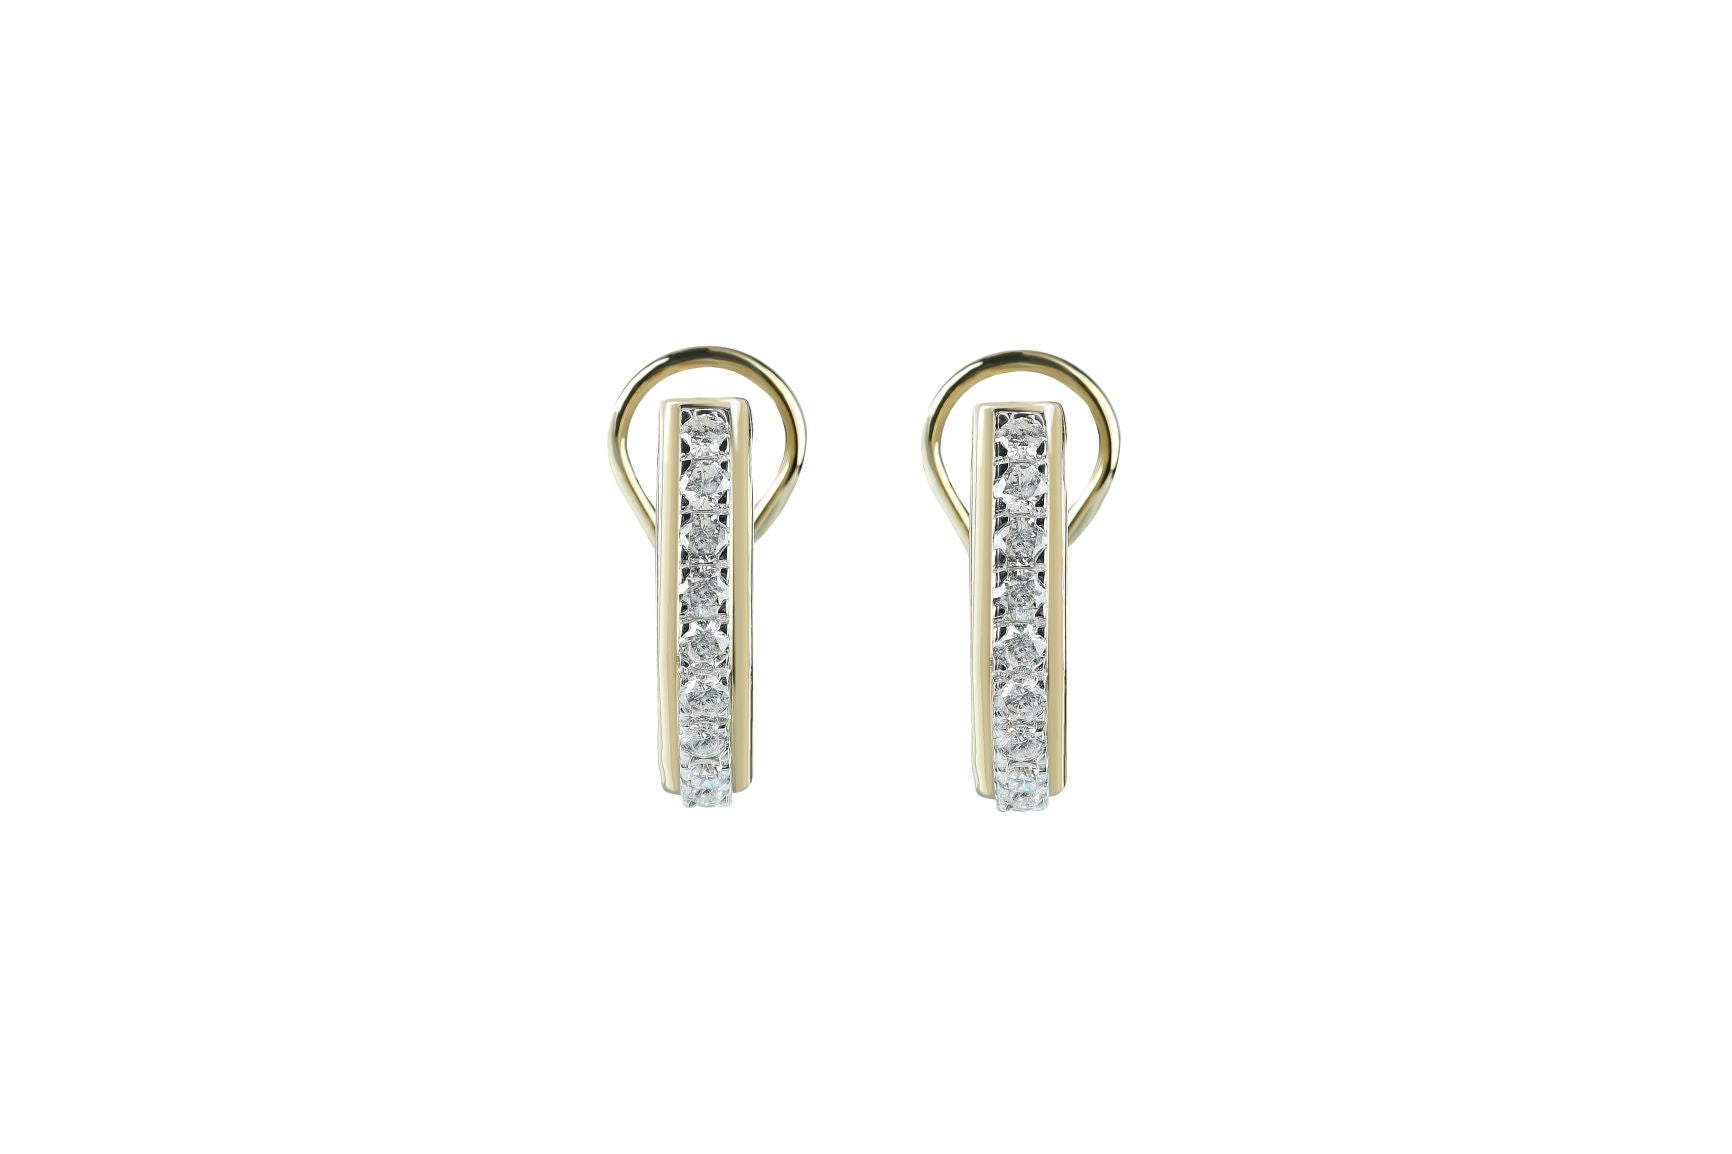 1 ctw Diamond Earrings 14k Gold